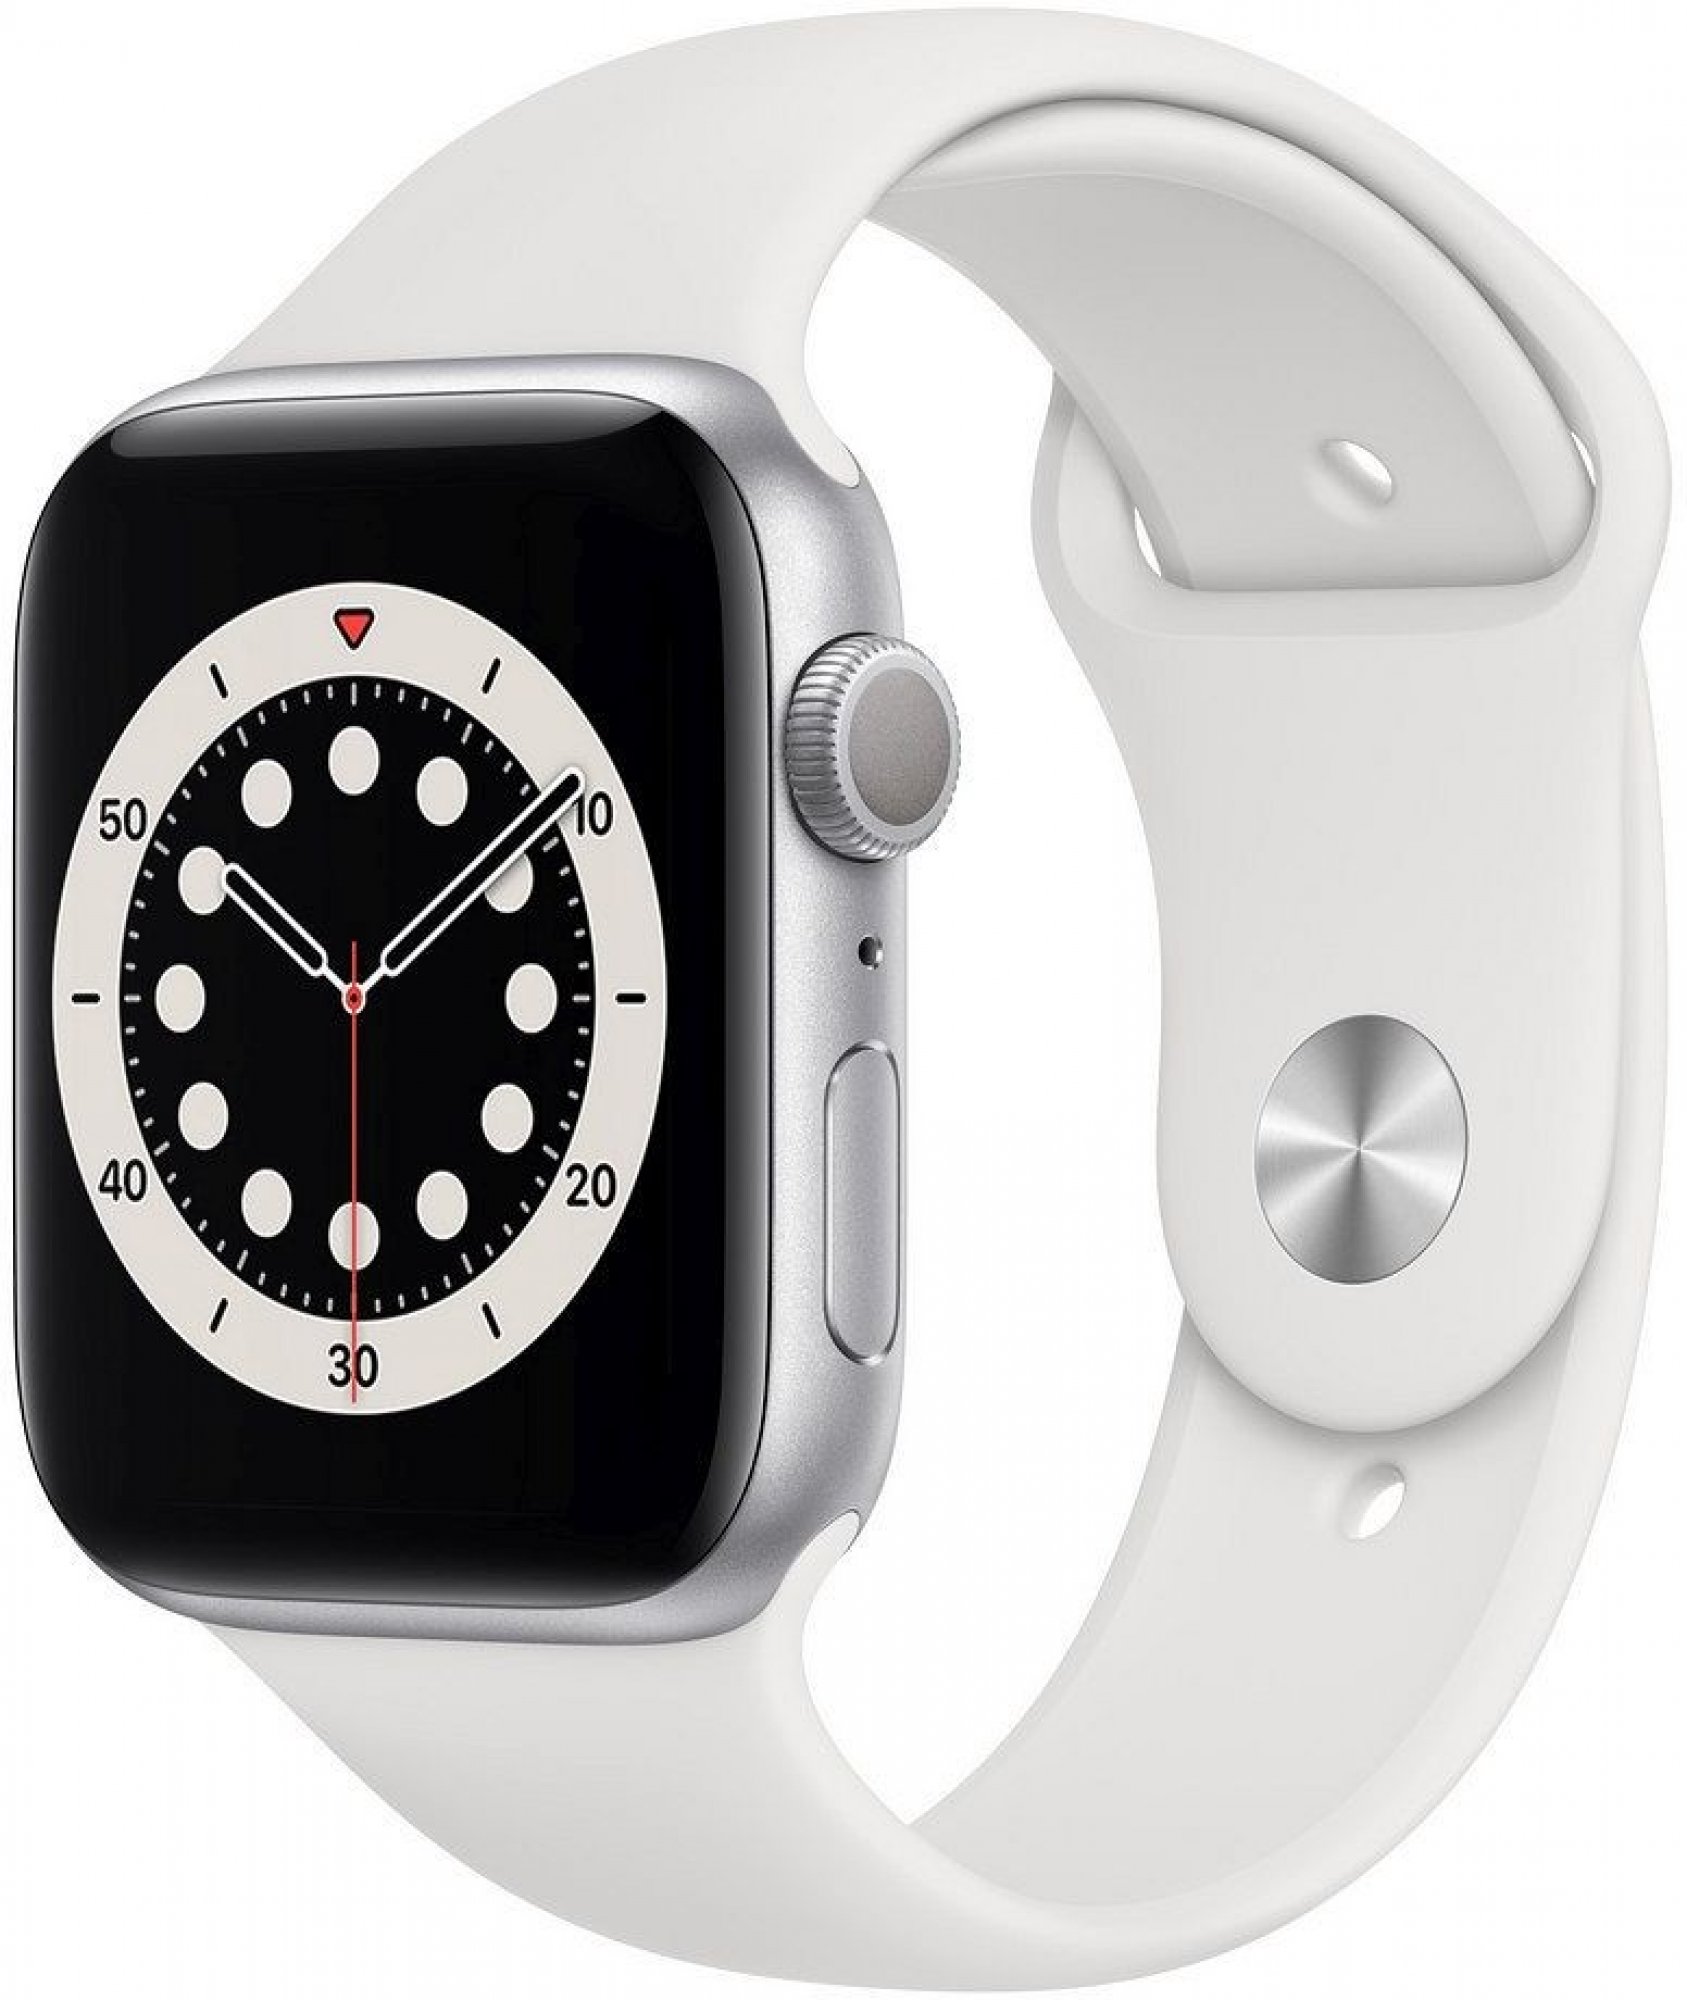 Écran neuf pour Apple Watch Series 4 (40mm) version GPS uniquement